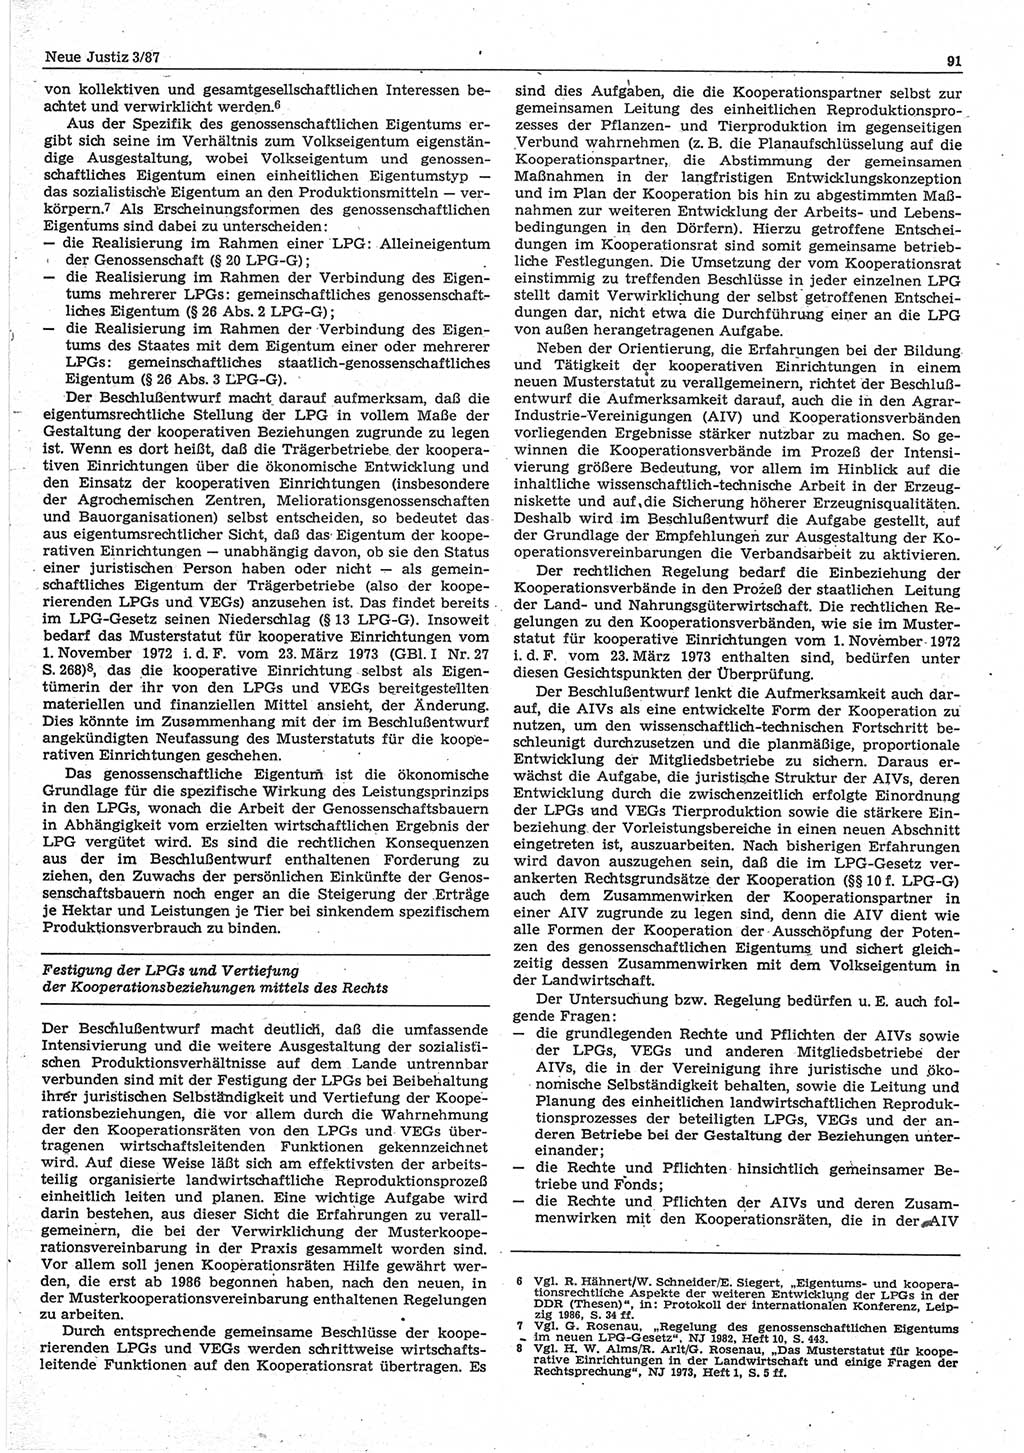 Neue Justiz (NJ), Zeitschrift für sozialistisches Recht und Gesetzlichkeit [Deutsche Demokratische Republik (DDR)], 41. Jahrgang 1987, Seite 91 (NJ DDR 1987, S. 91)